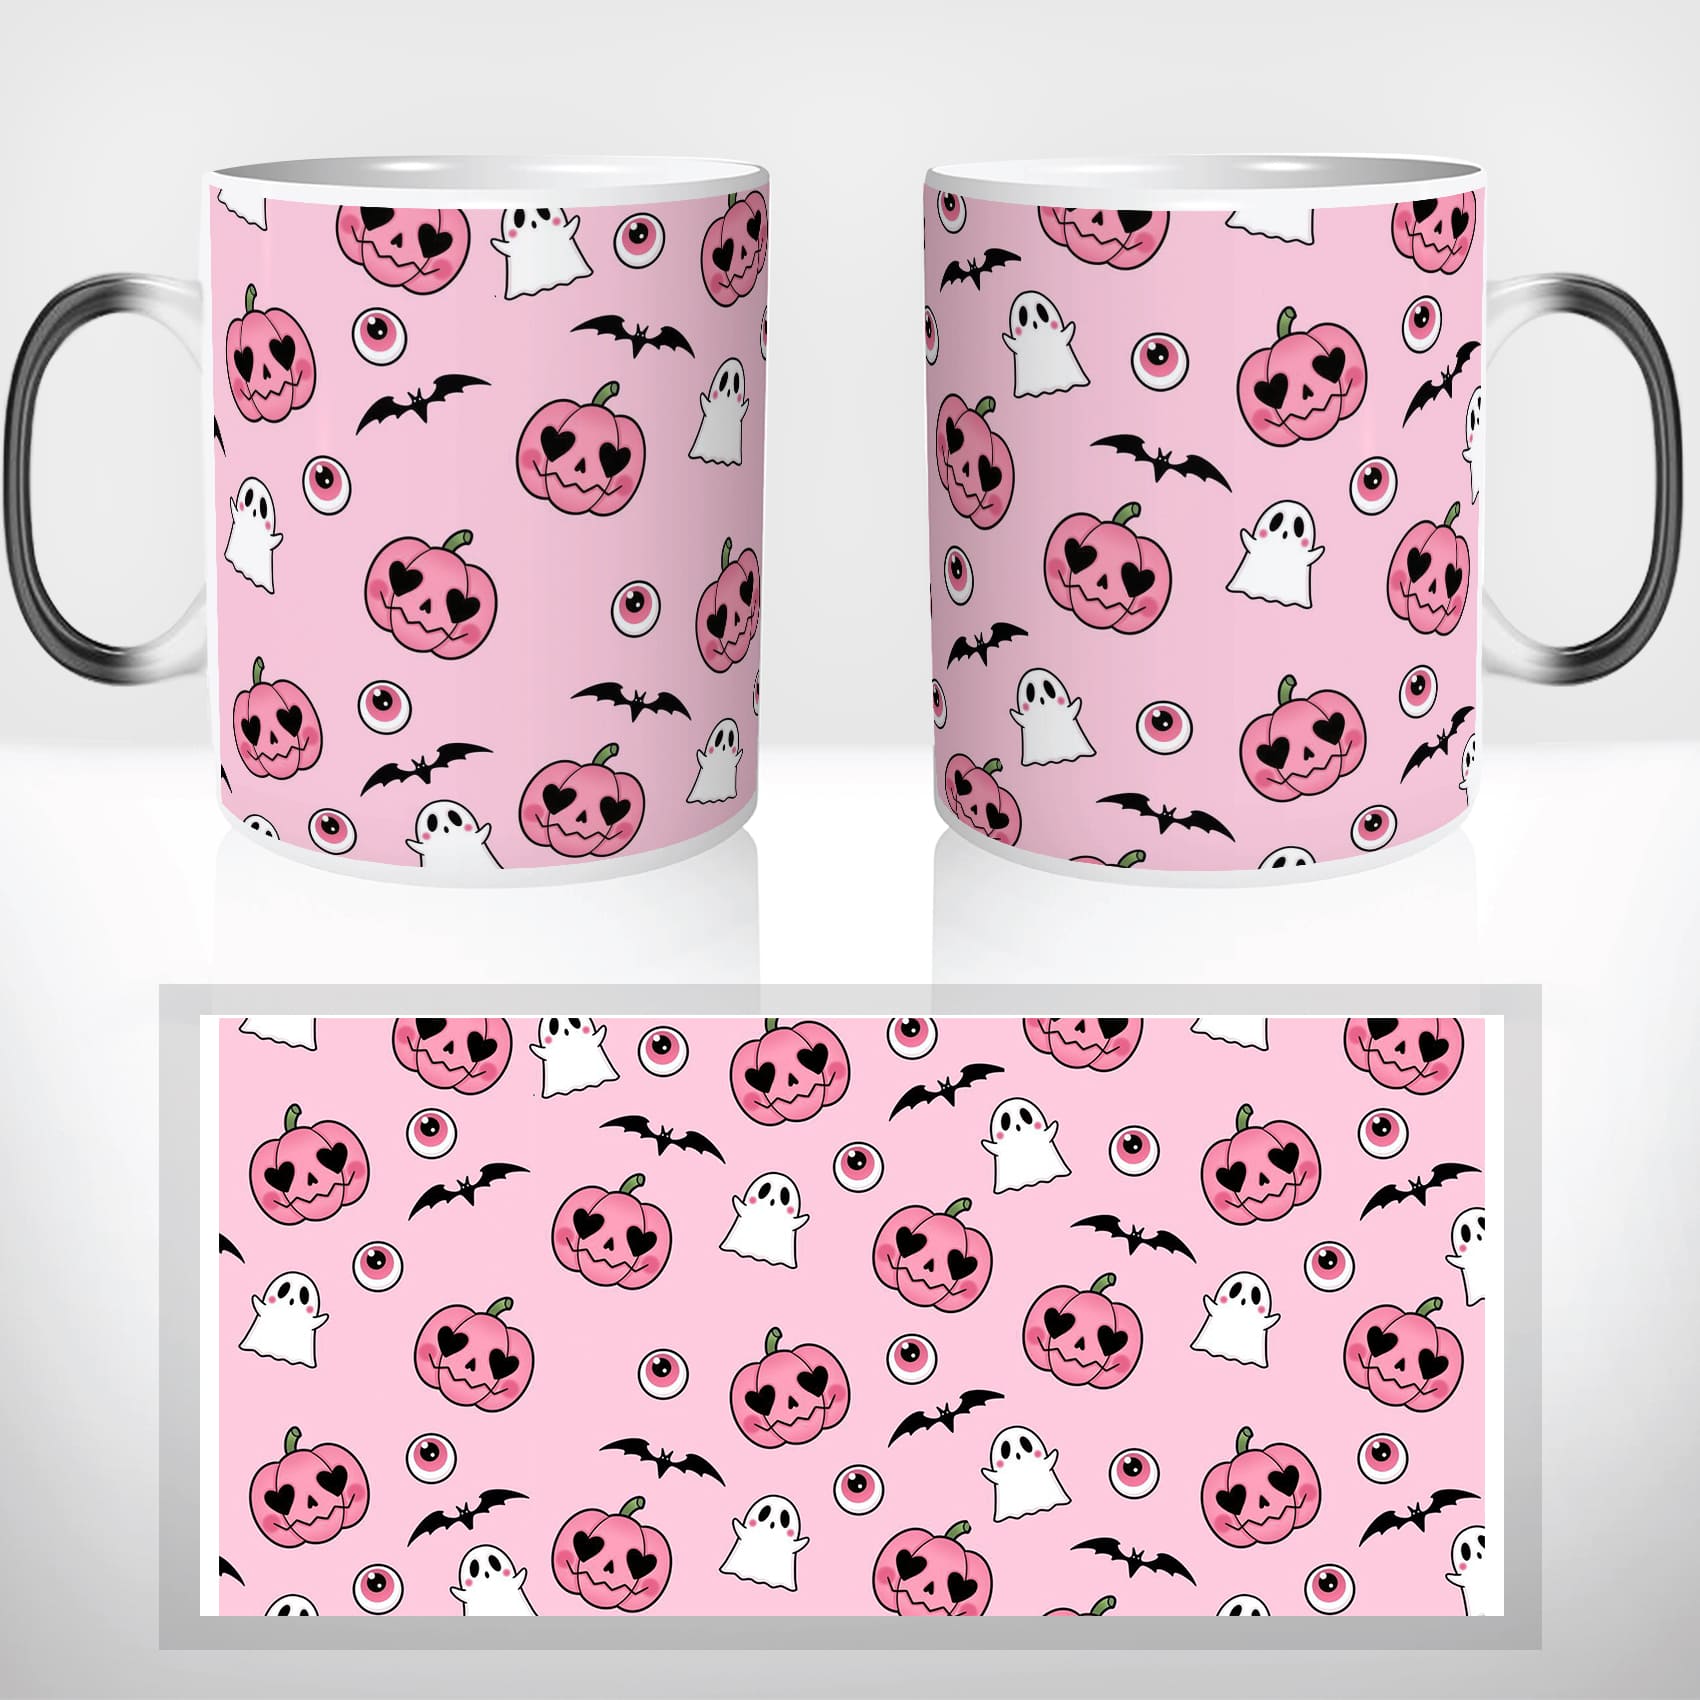 mug-magique-personnalisable-thermoreactif-tasse-thermique-citrouille-rose-girly-fantome-pink-spooky-déguisement-halloween-fun-idée-cadeau-original